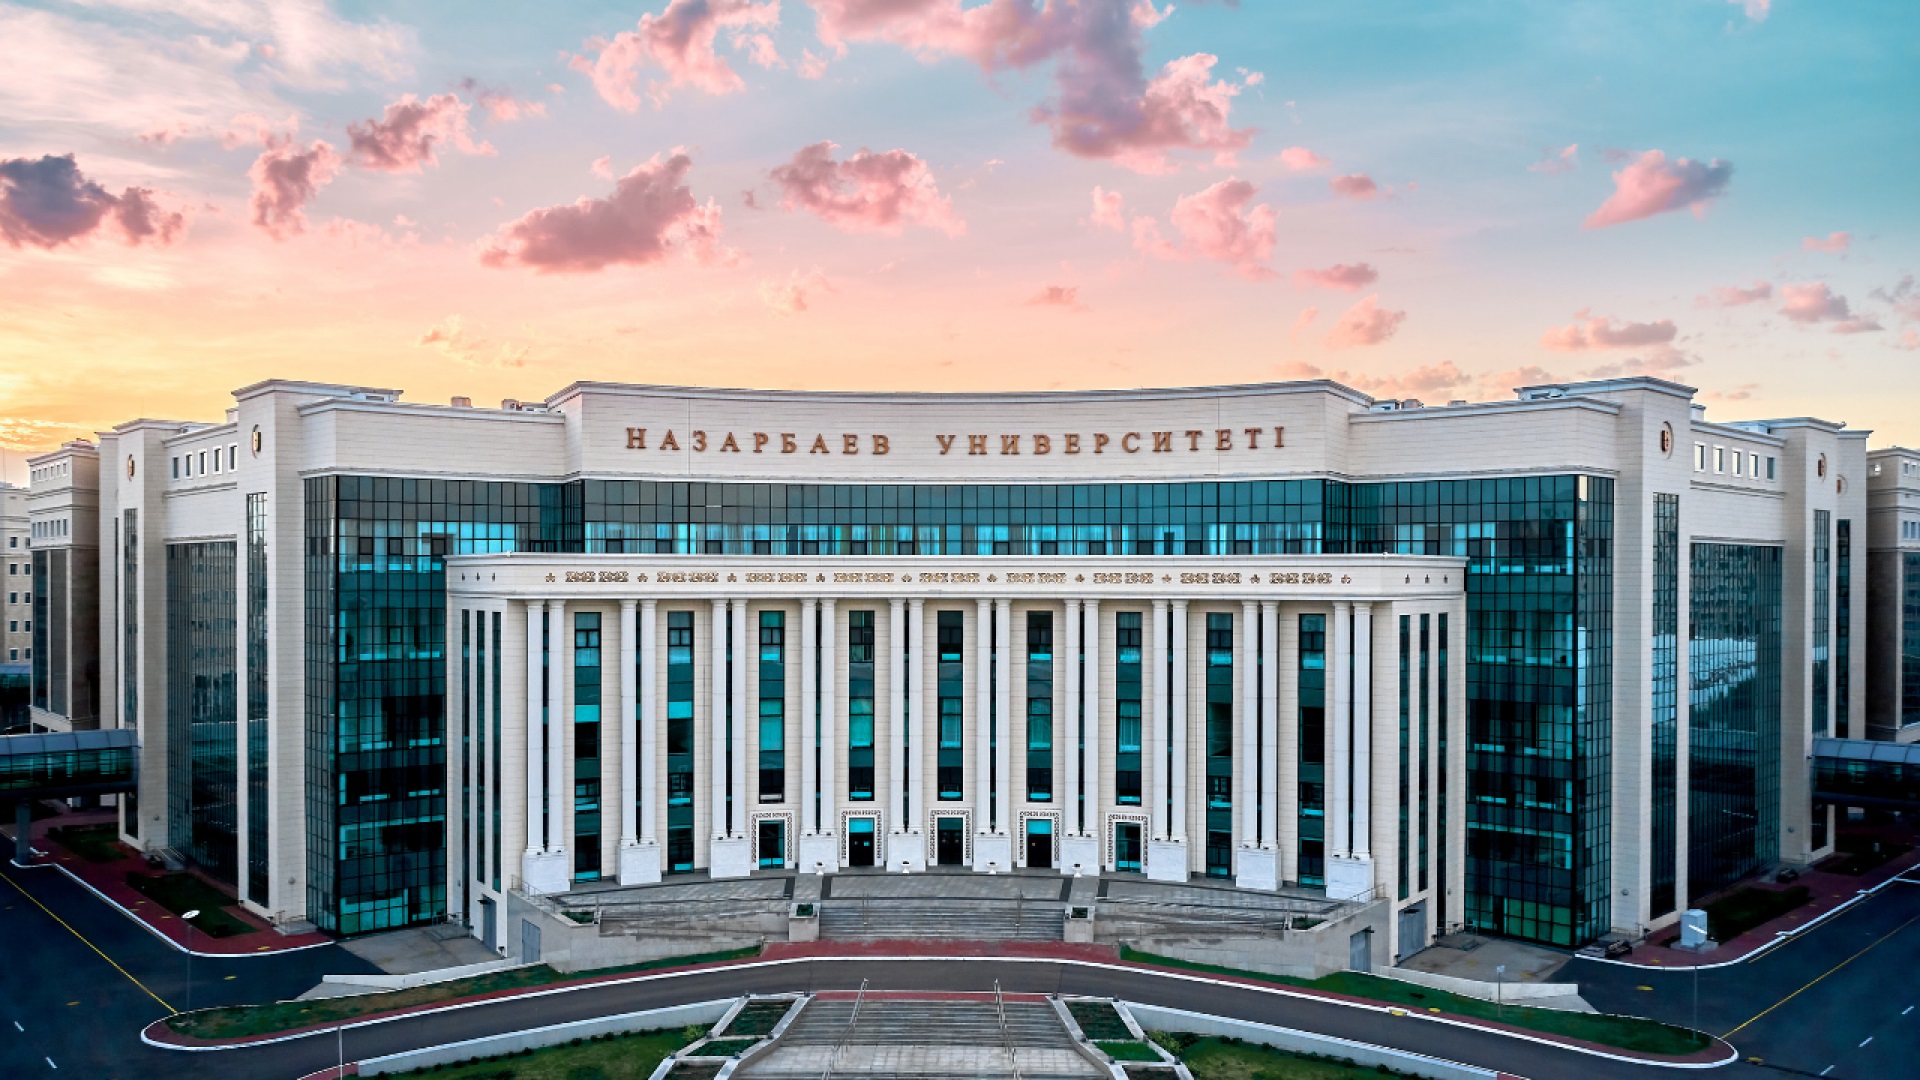 Депутат Назарбаев университета нет ни в одном рейтинге, несмотря на крупное финансирование - Bizmedia.kz